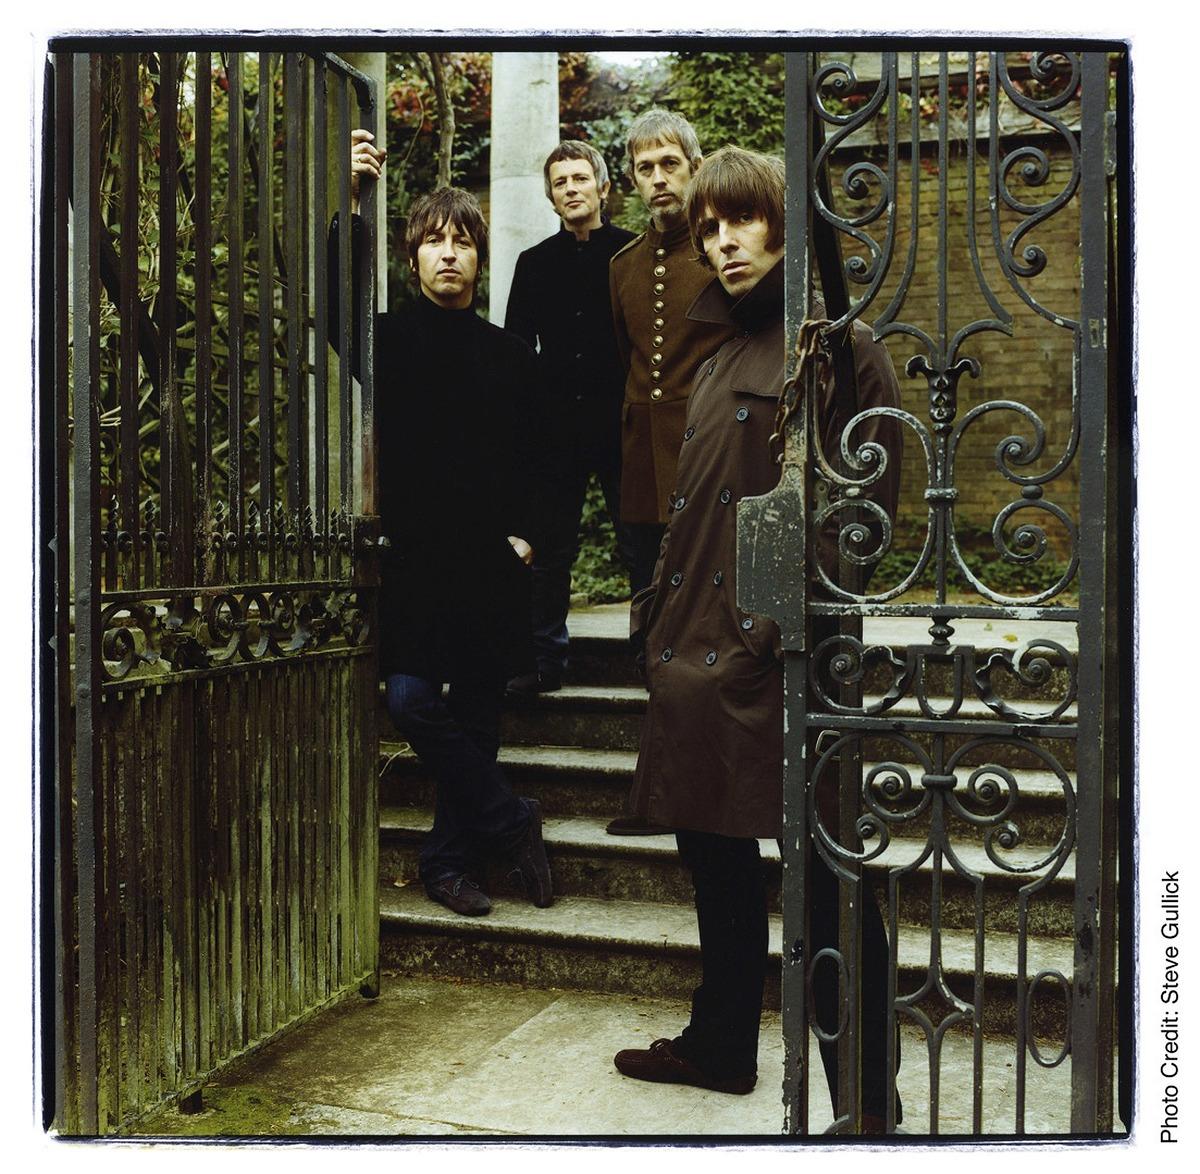 ALLA ÄR KVAR – UTOM NOEL Gem Archer, Chris Sharrock, Andy Bell och Liam Gallagher spelade ihop i Oasis. När Noel Gallagher lämnade bandet bildade de andra Beady Eye. Nu släpps snart deras skiva. ”Så här bra har jag aldrig sjungit tidigare”, säger Liam.